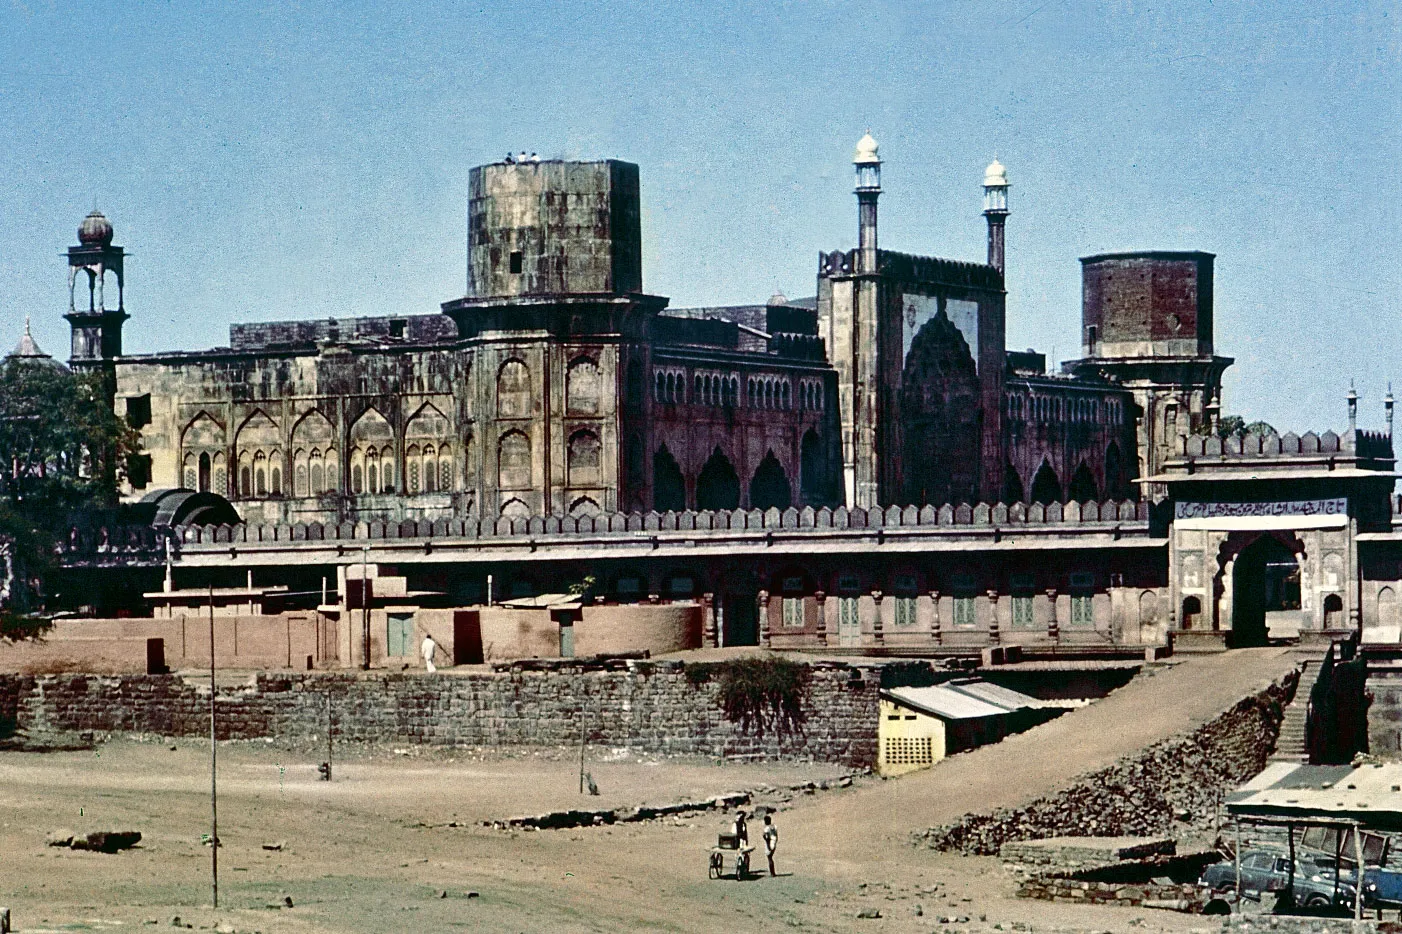 La ville de Bhopal